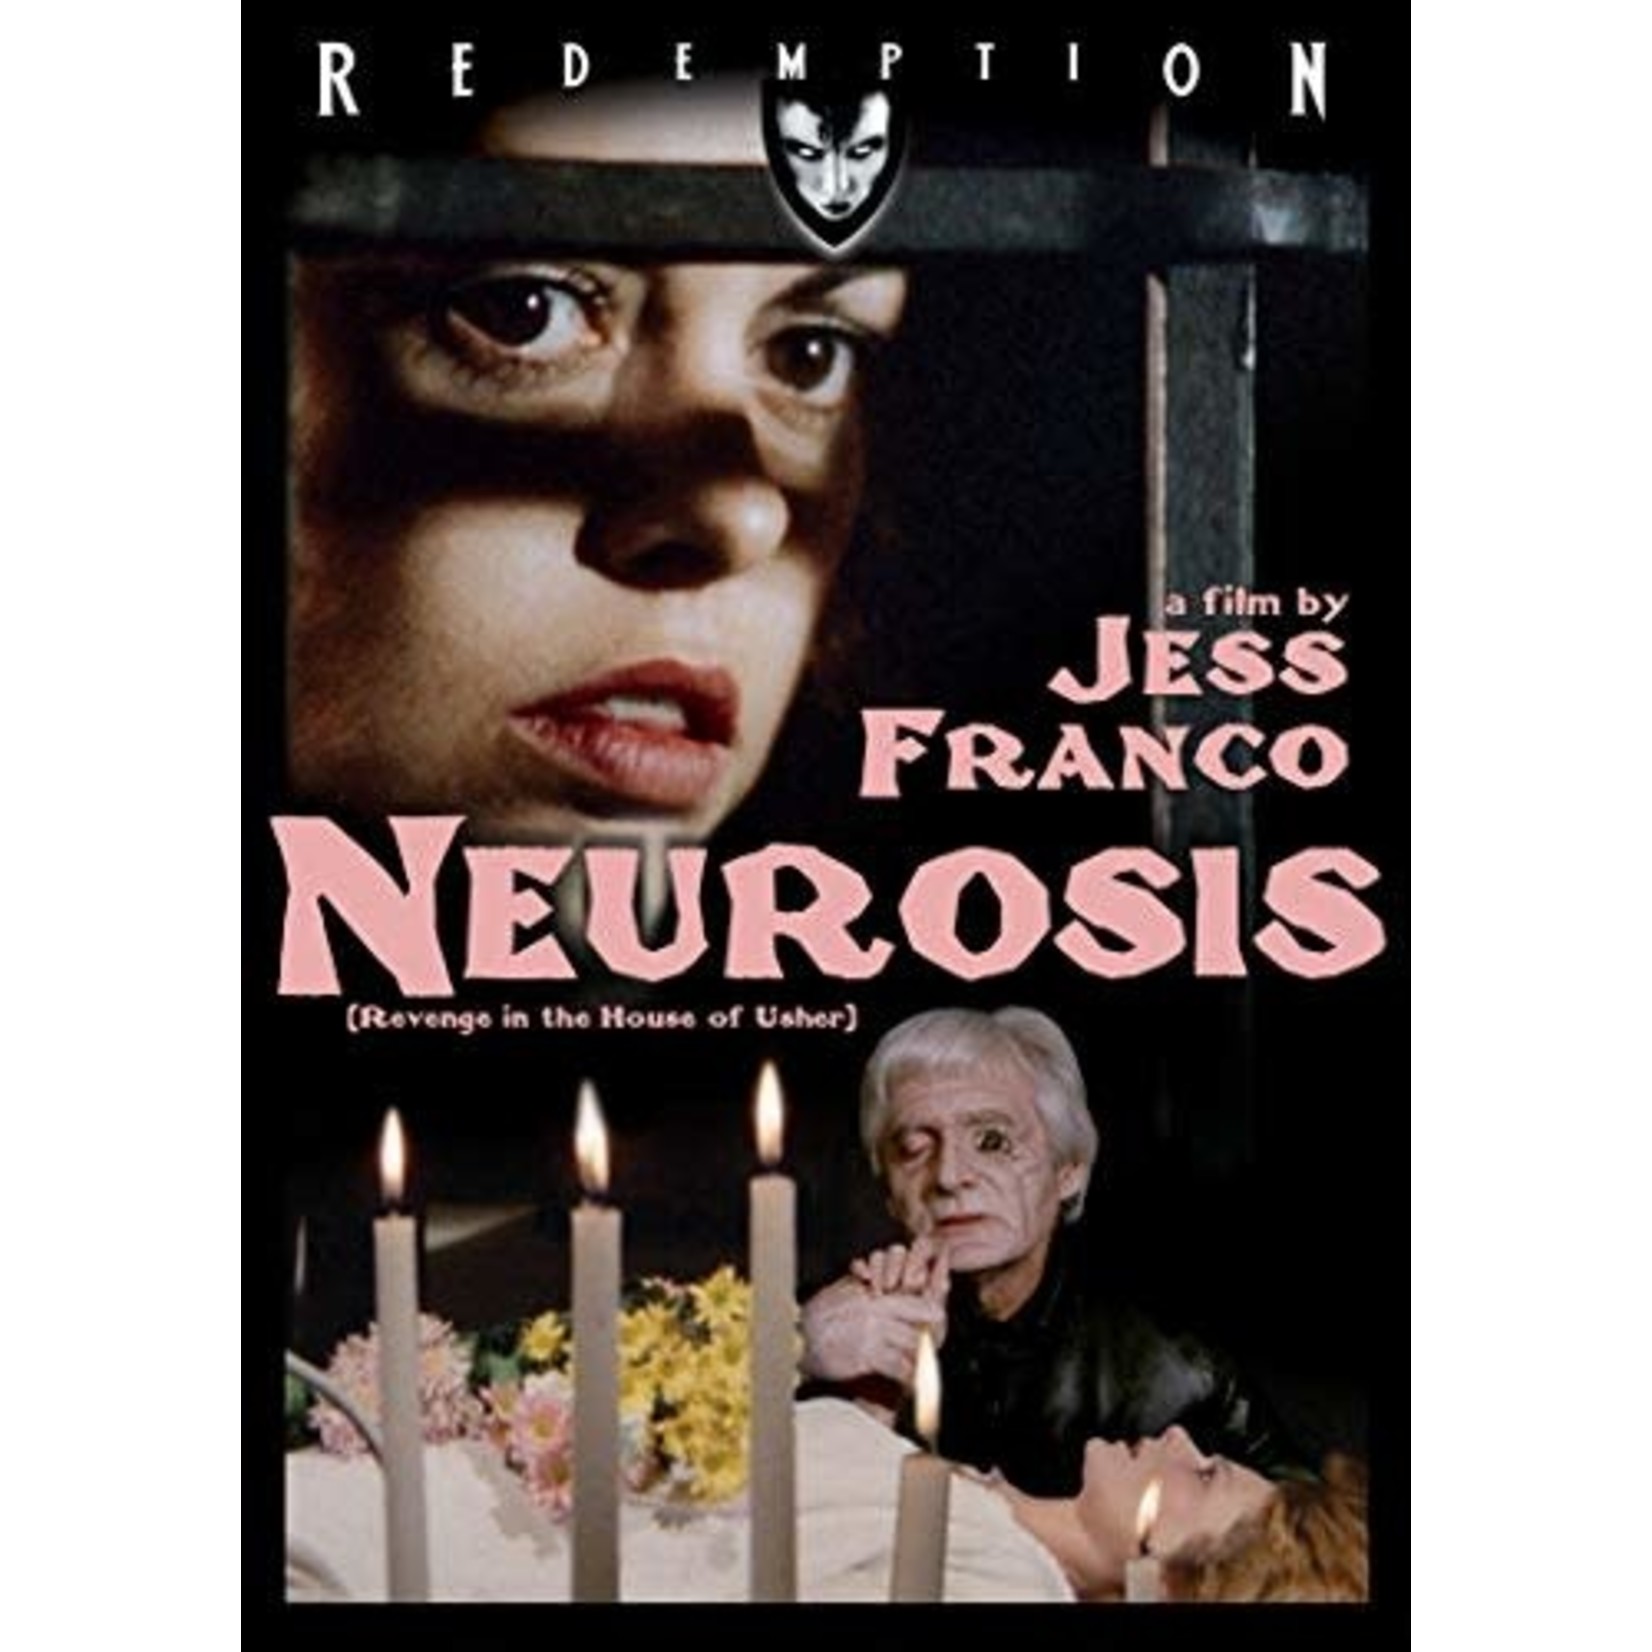 Neurosis (1985) [DVD]